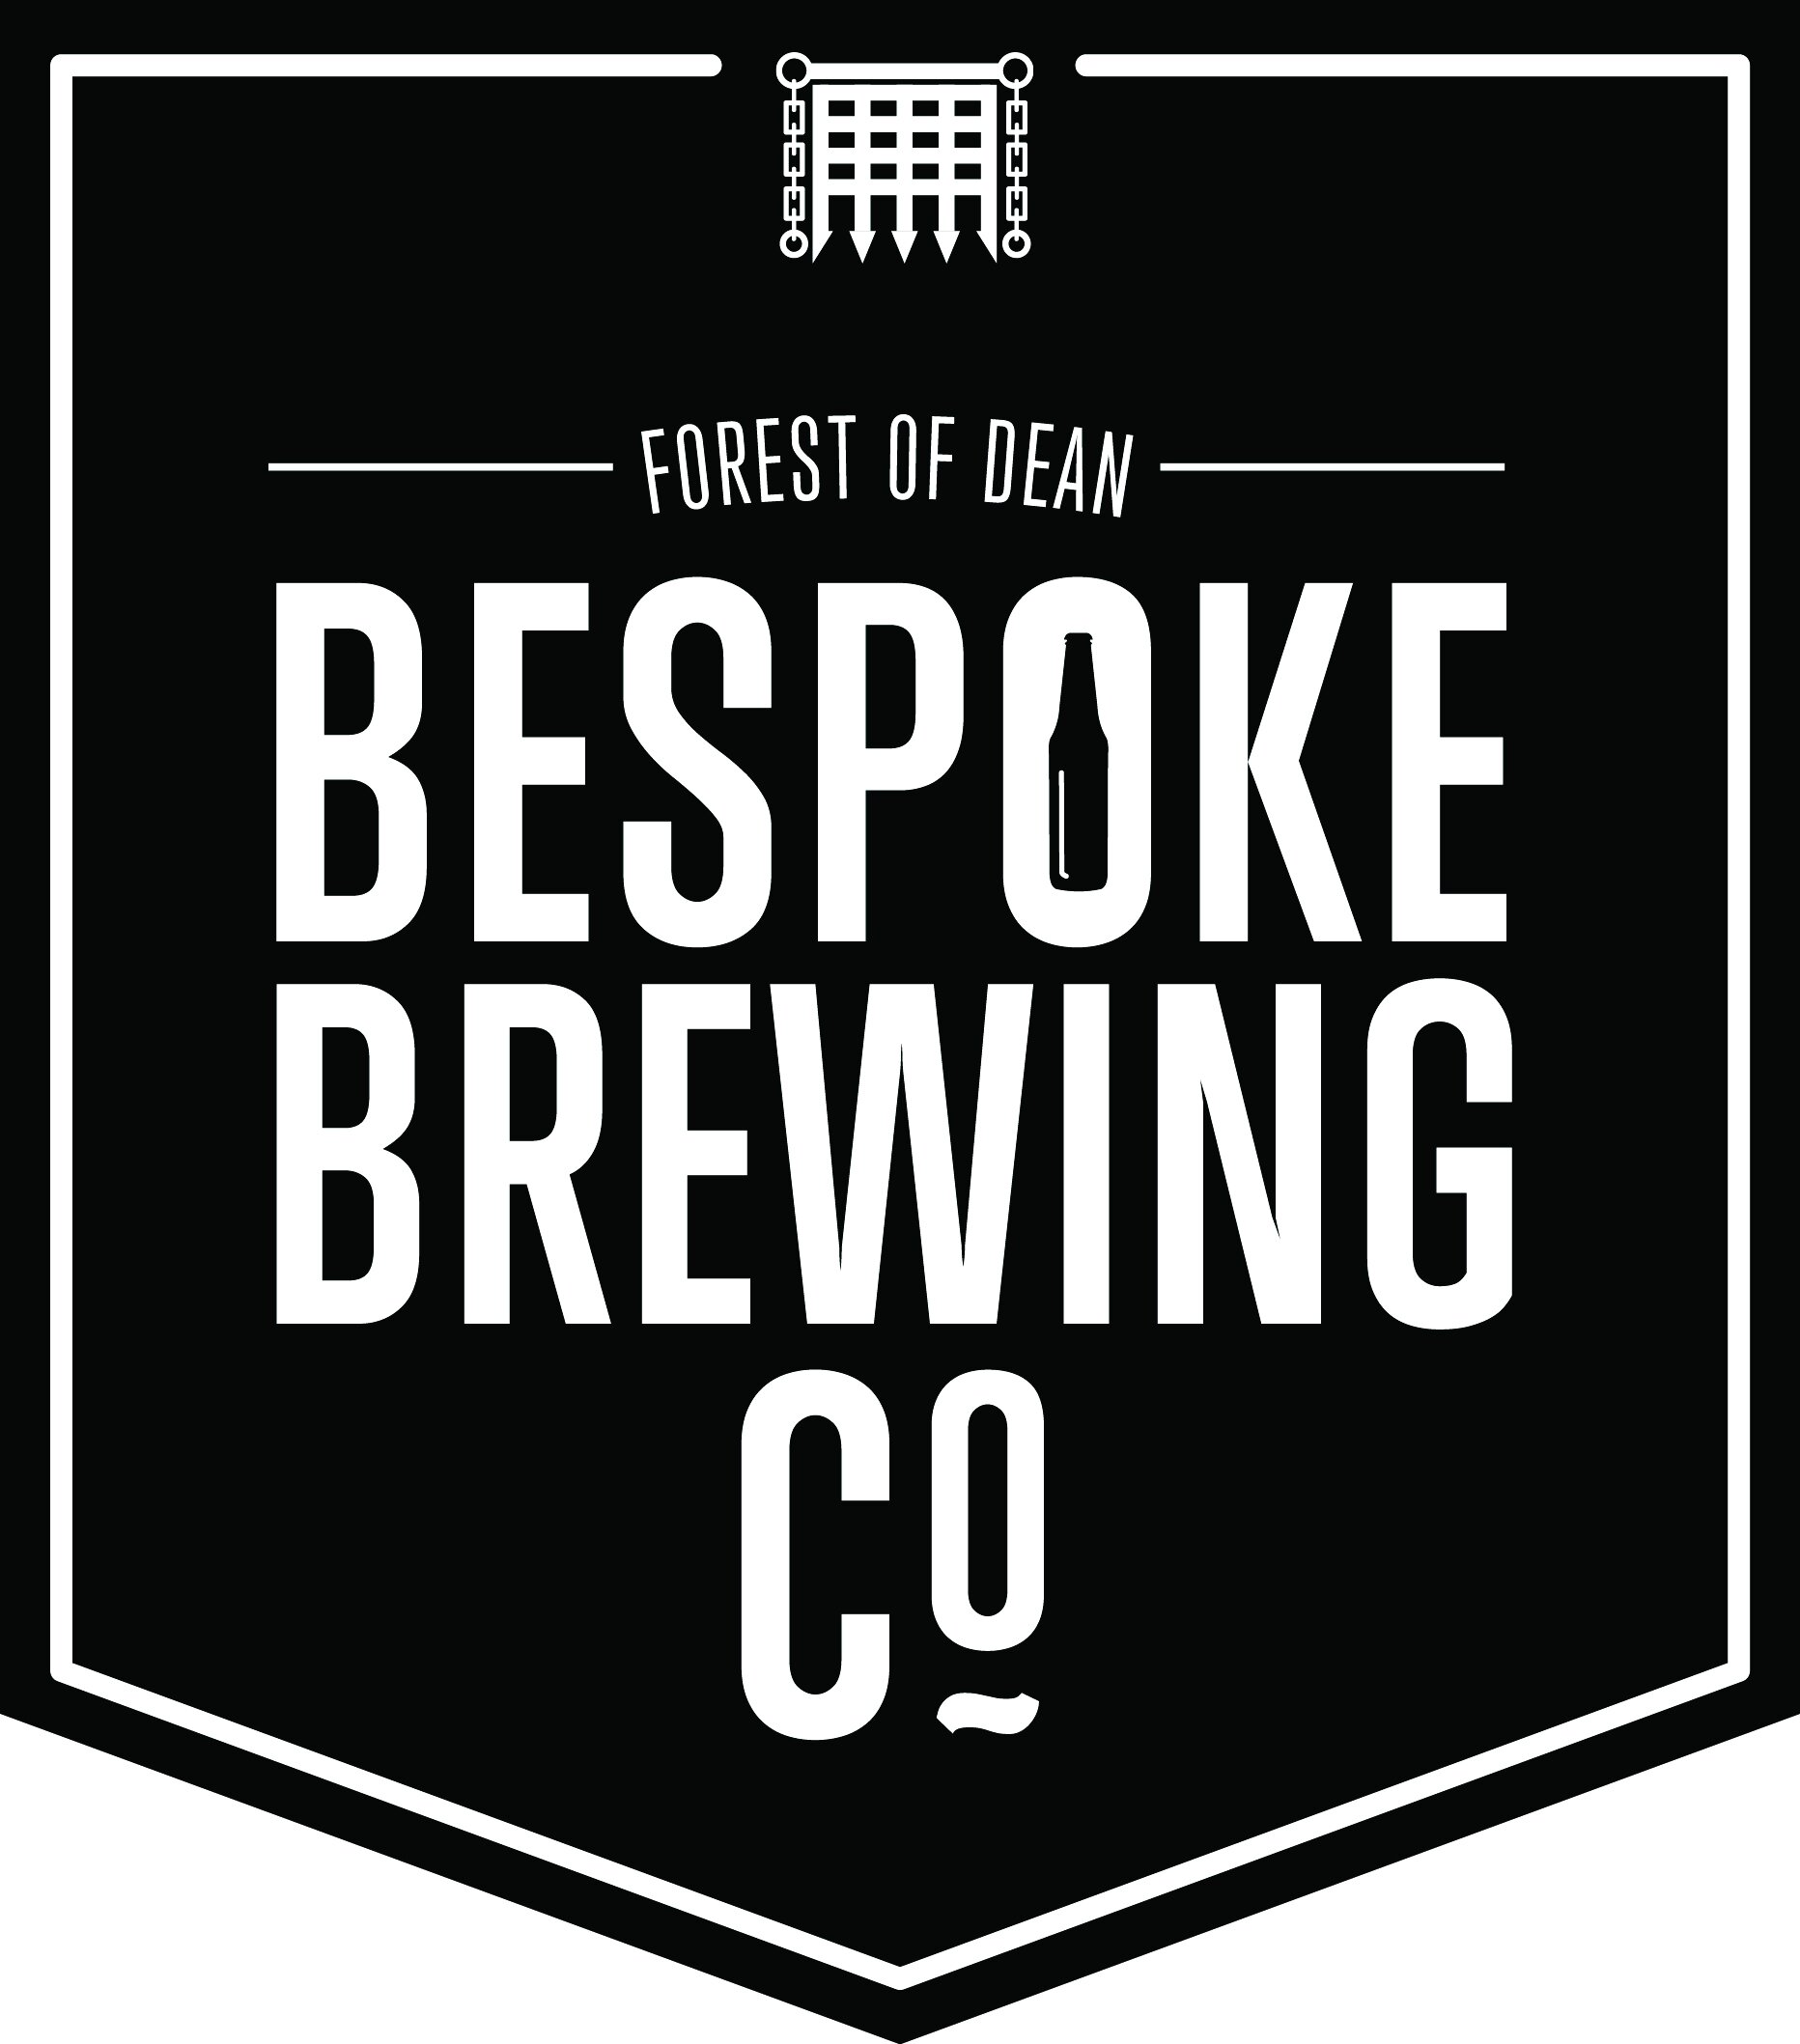 Bespoke Brewing Logo_Forest of Dean (2).jpg